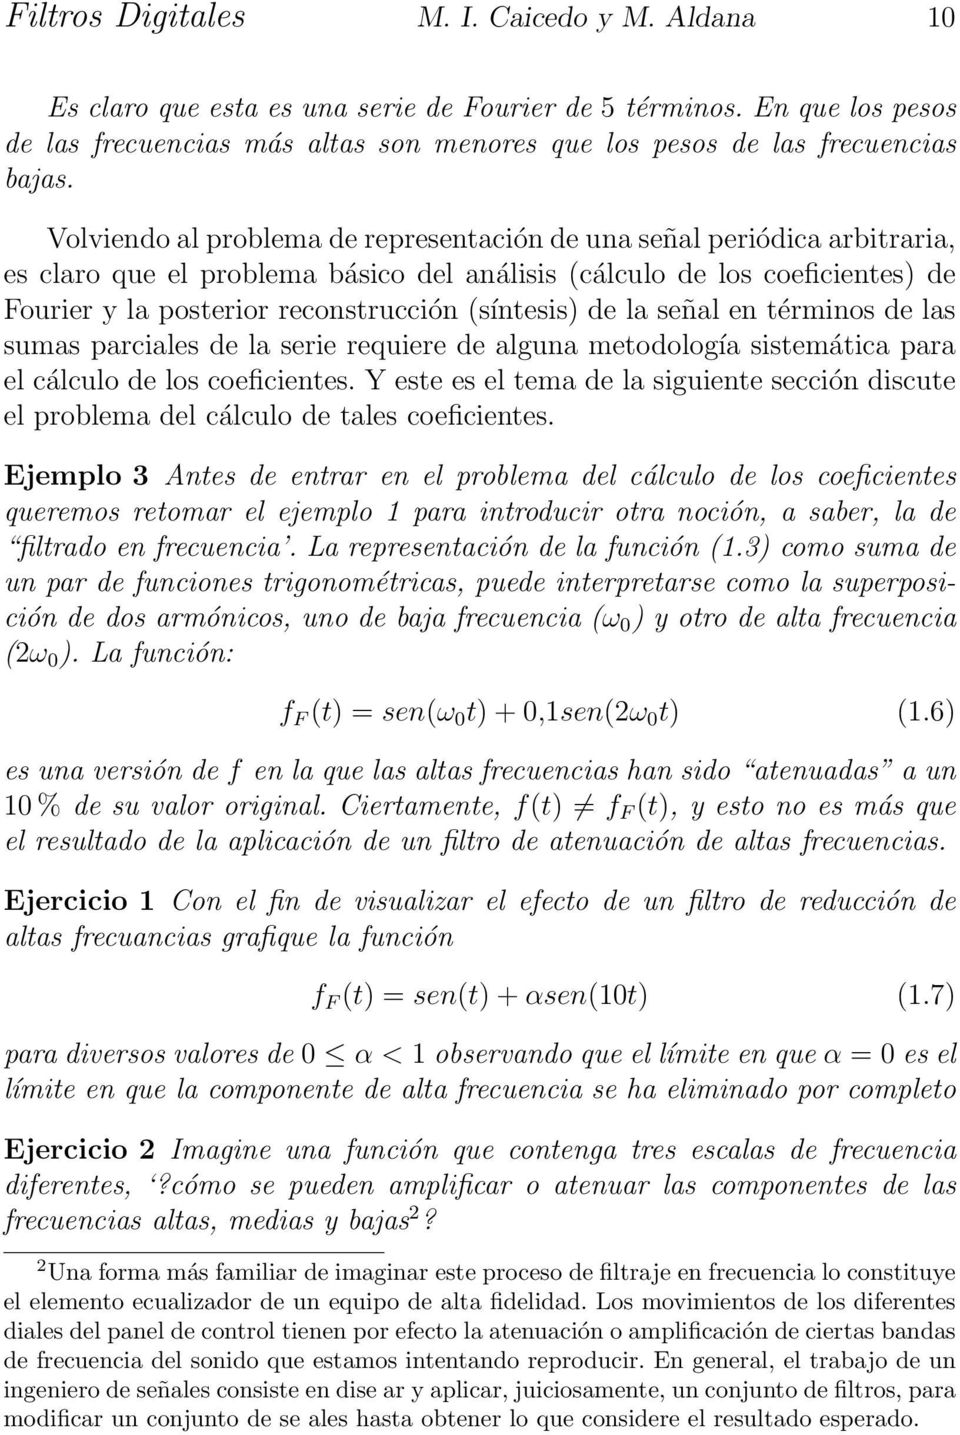 Volviendo al problema de representación de una señal periódica arbitraria, es claro que el problema básico del análisis (cálculo de los coeficientes) de Fourier y la posterior reconstrucción